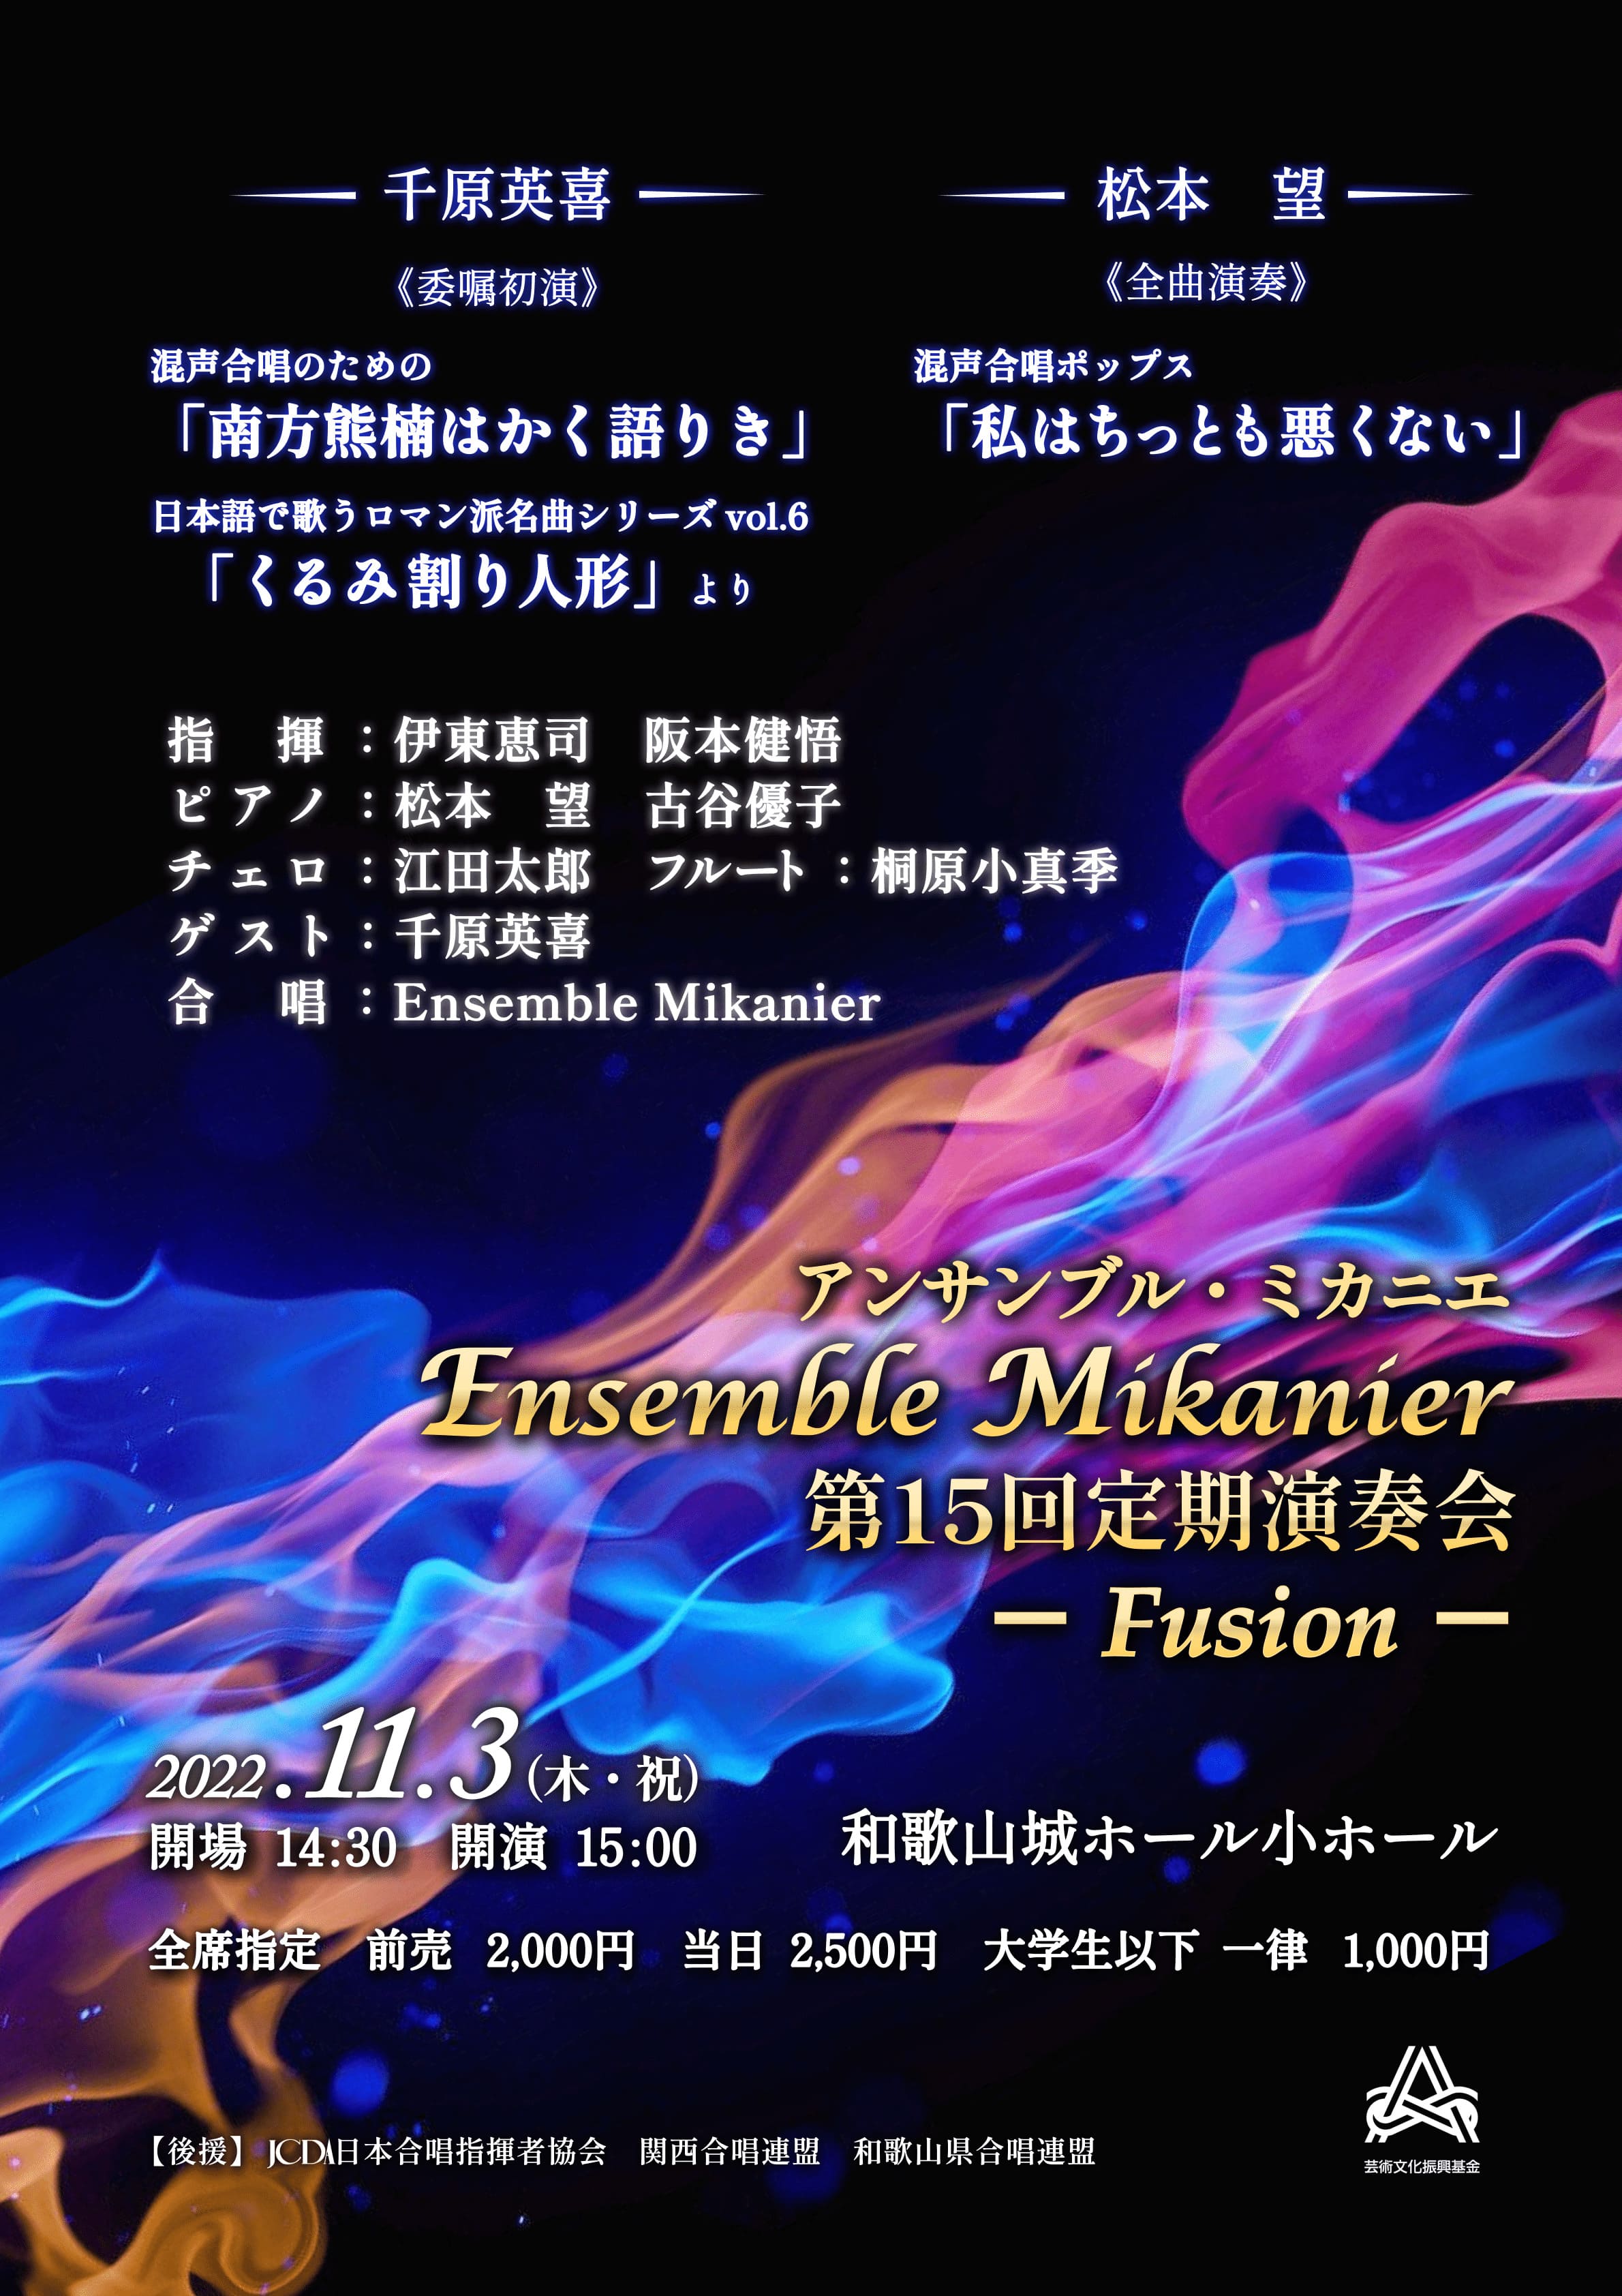 Ensemble Mikanier第15回定期演奏会 - Fusion -